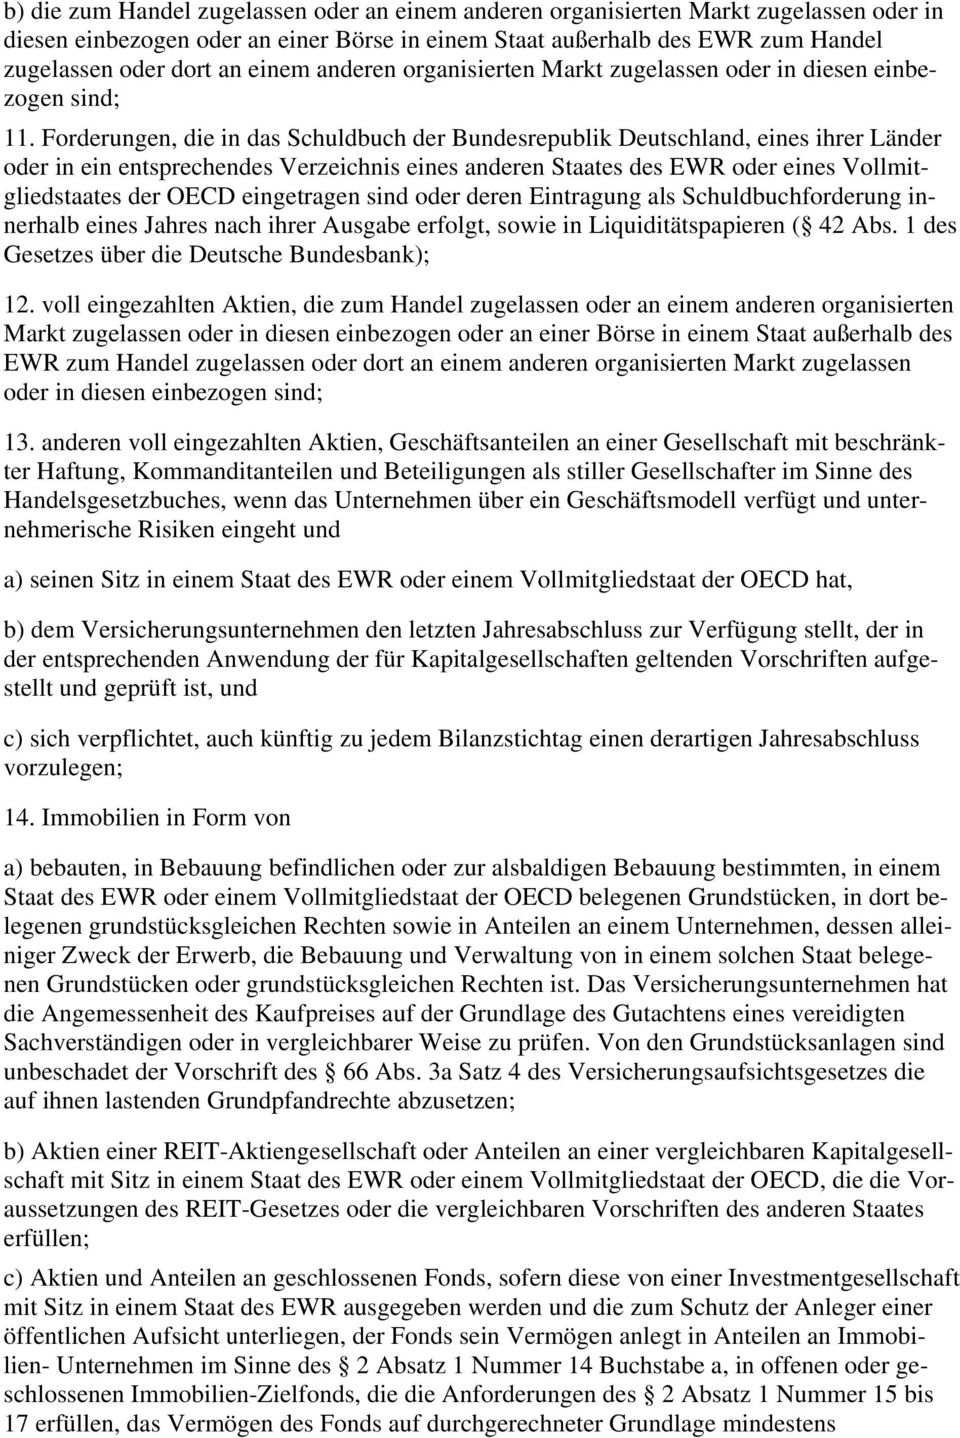 Forderungen, die in das Schuldbuch der Bundesrepublik Deutschland, eines ihrer Länder oder in ein entsprechendes Verzeichnis eines anderen Staates des EWR oder eines Vollmitgliedstaates der OECD